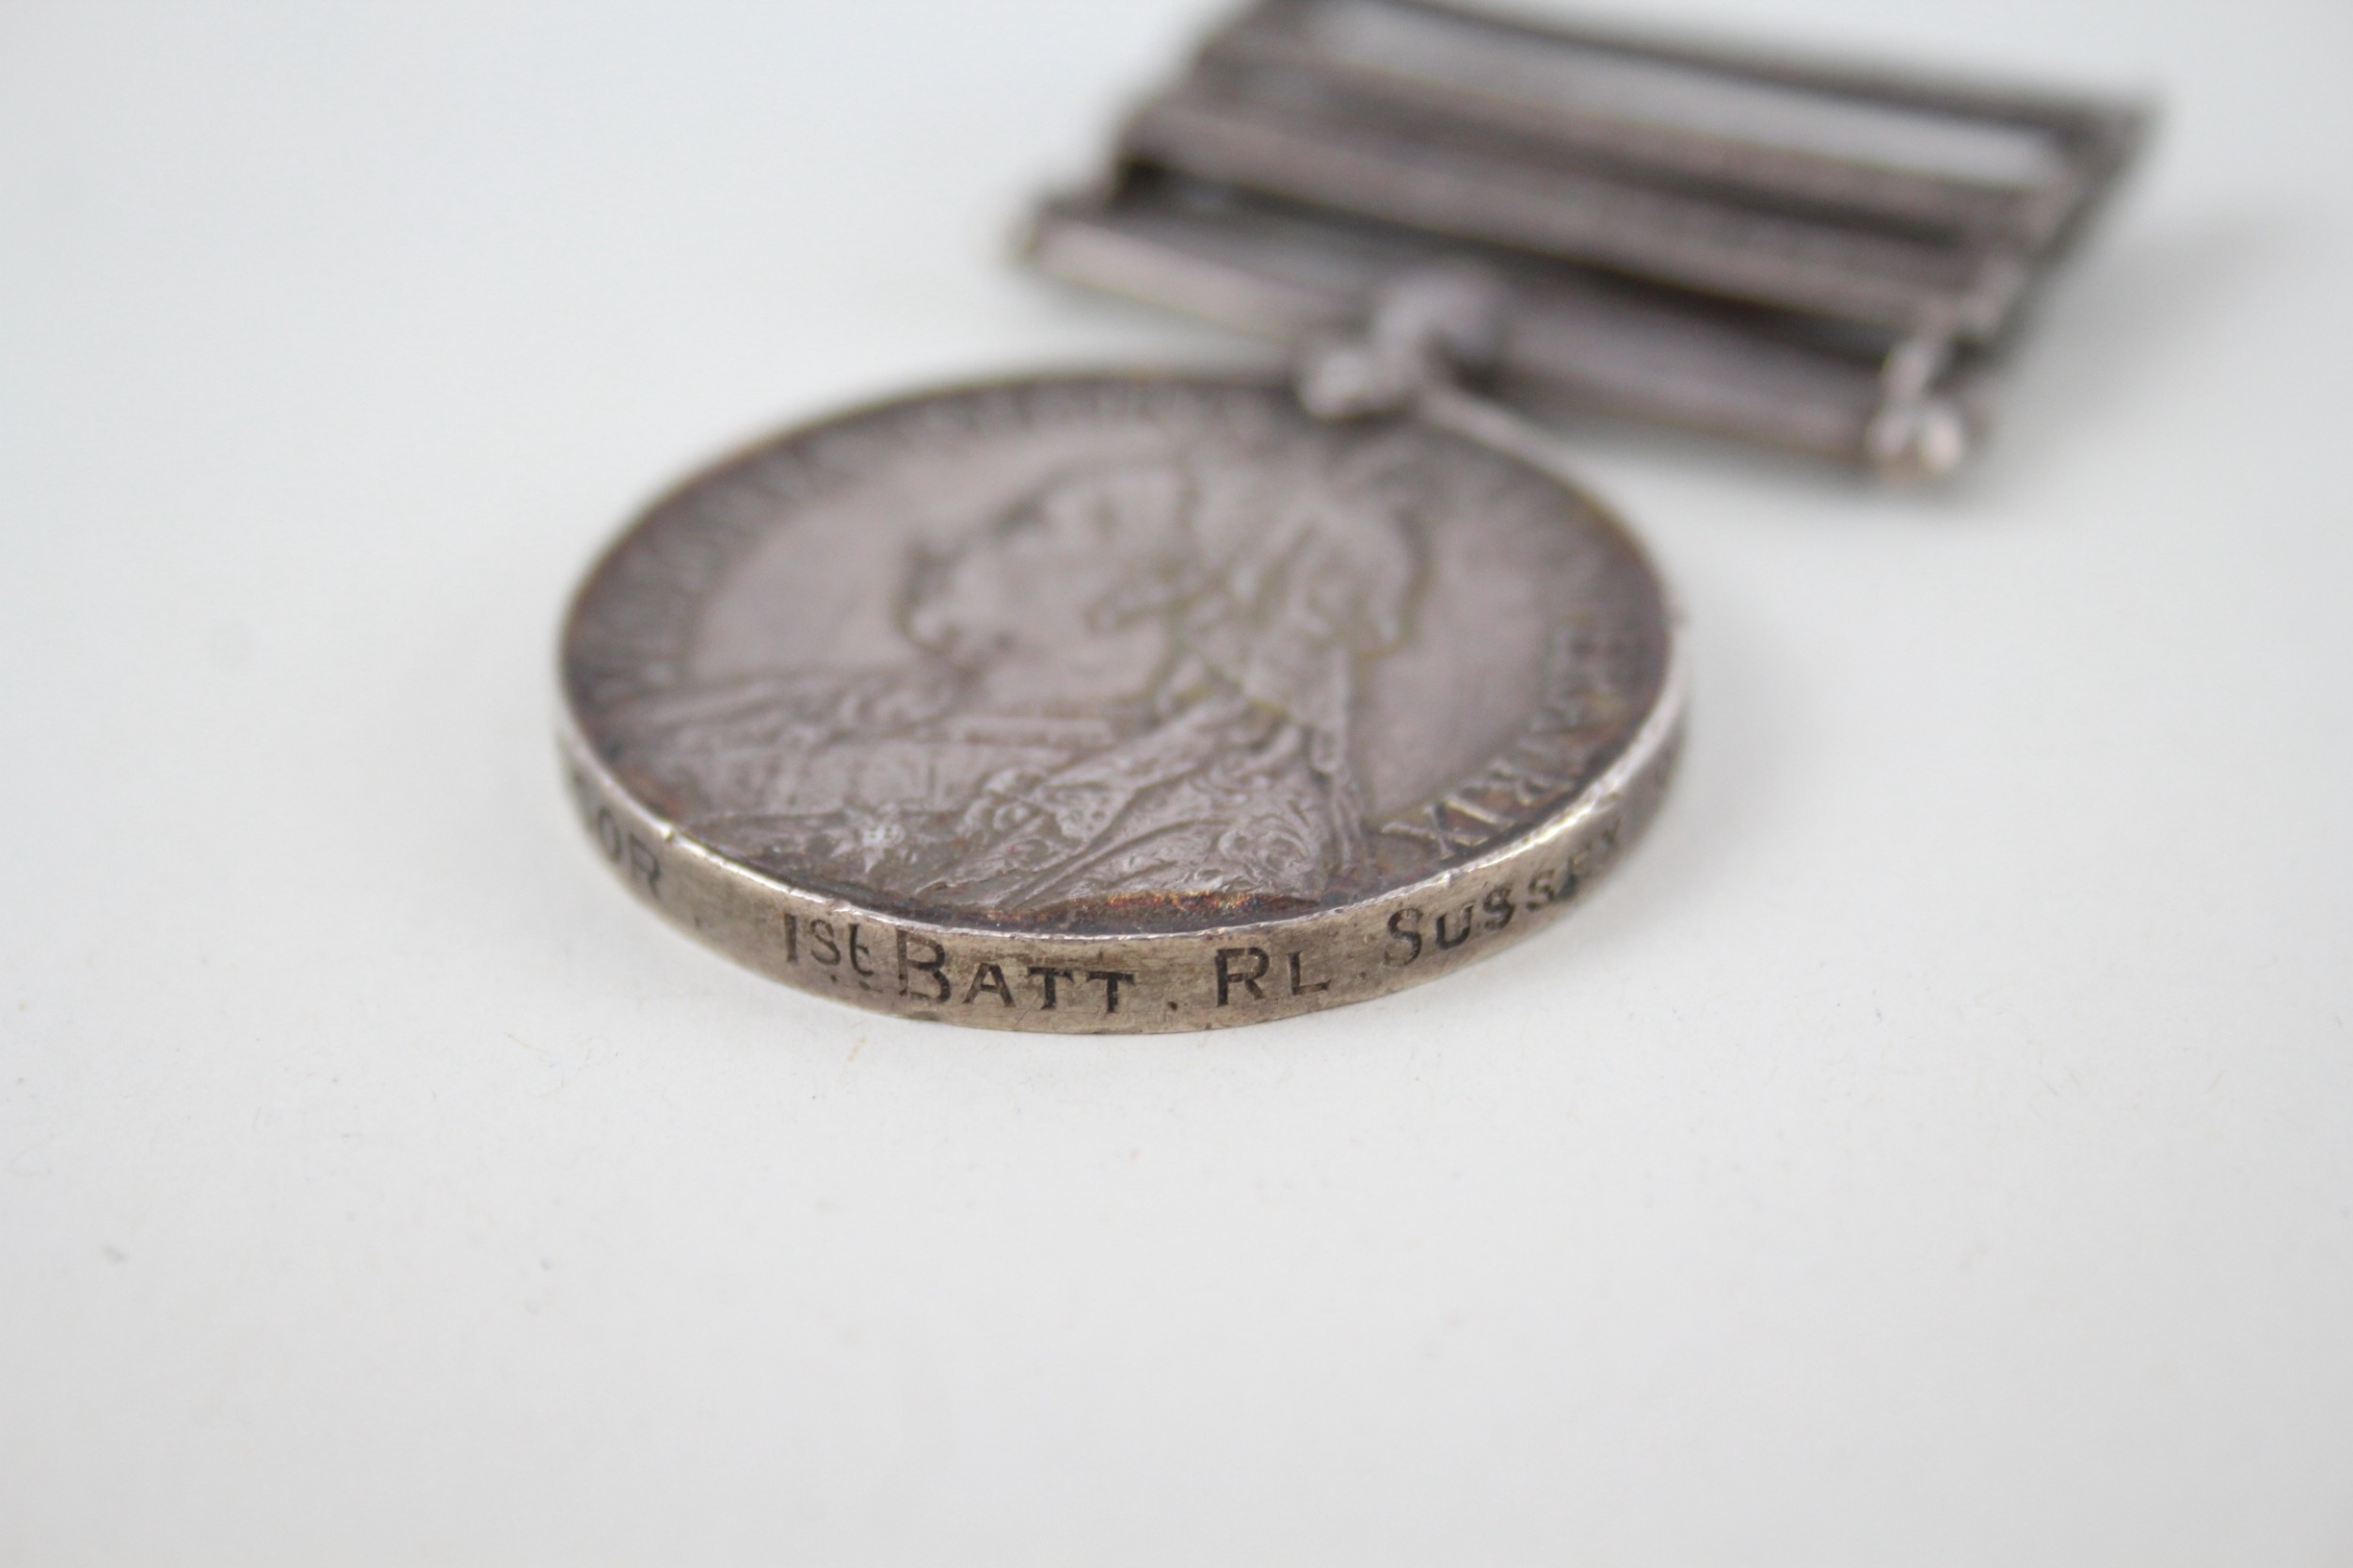 Boer War Queens South Africa Medal Named 2908 C. Windsor - Image 6 of 6